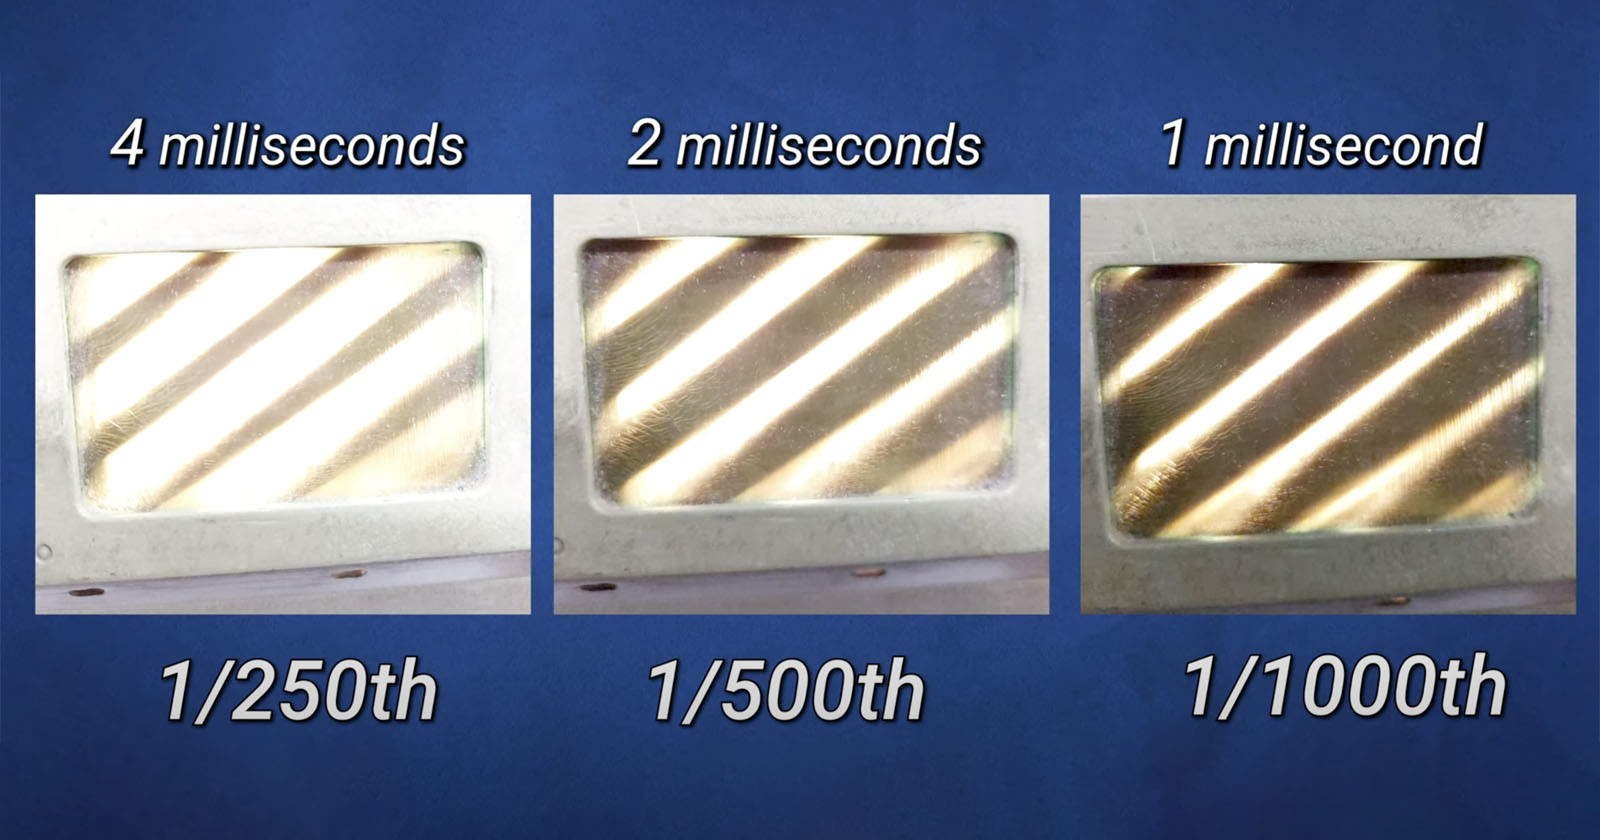  how leica measured shutter speeds millisecond 